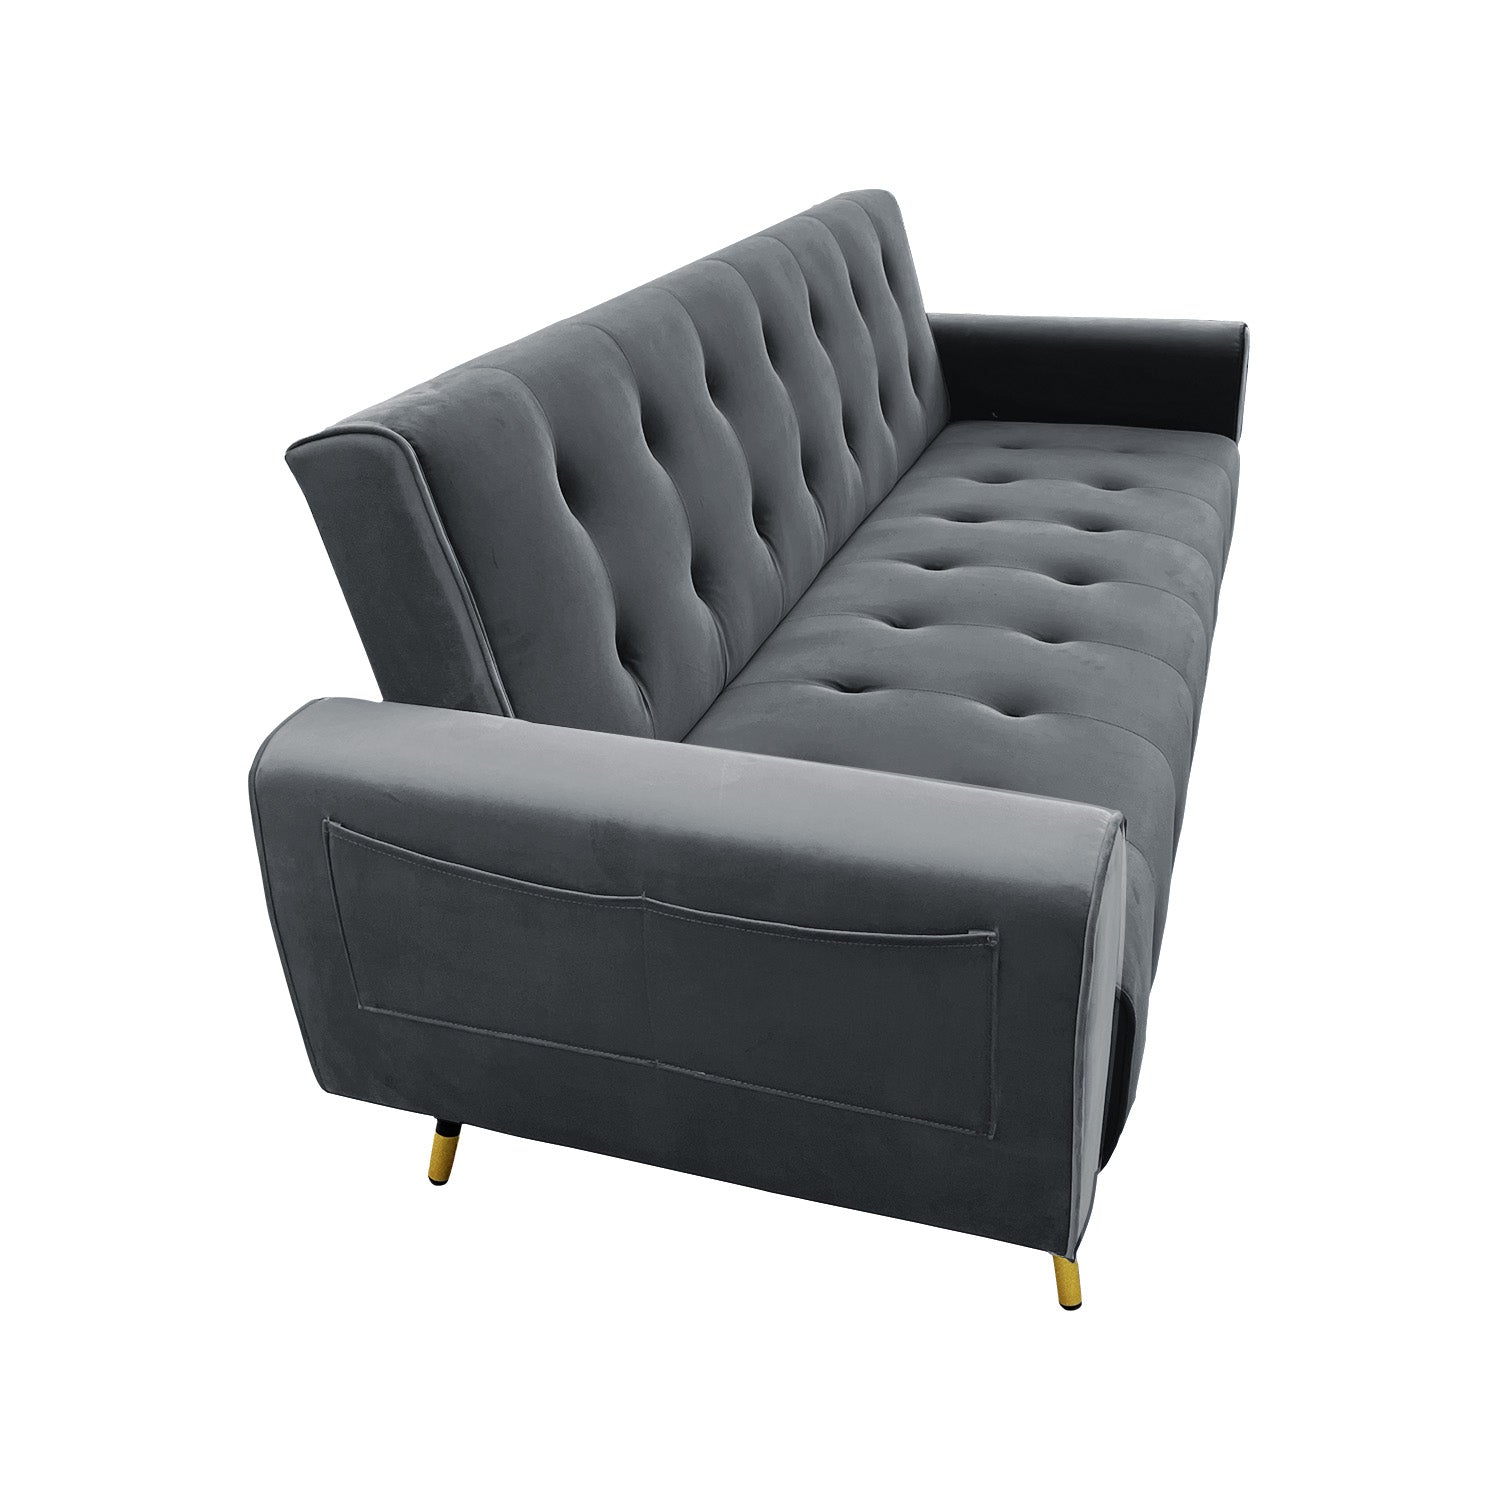 Sarantino Ava 3-seater Tufted Velvet Sofa Bed By Sarantino - Dark Grey - 0